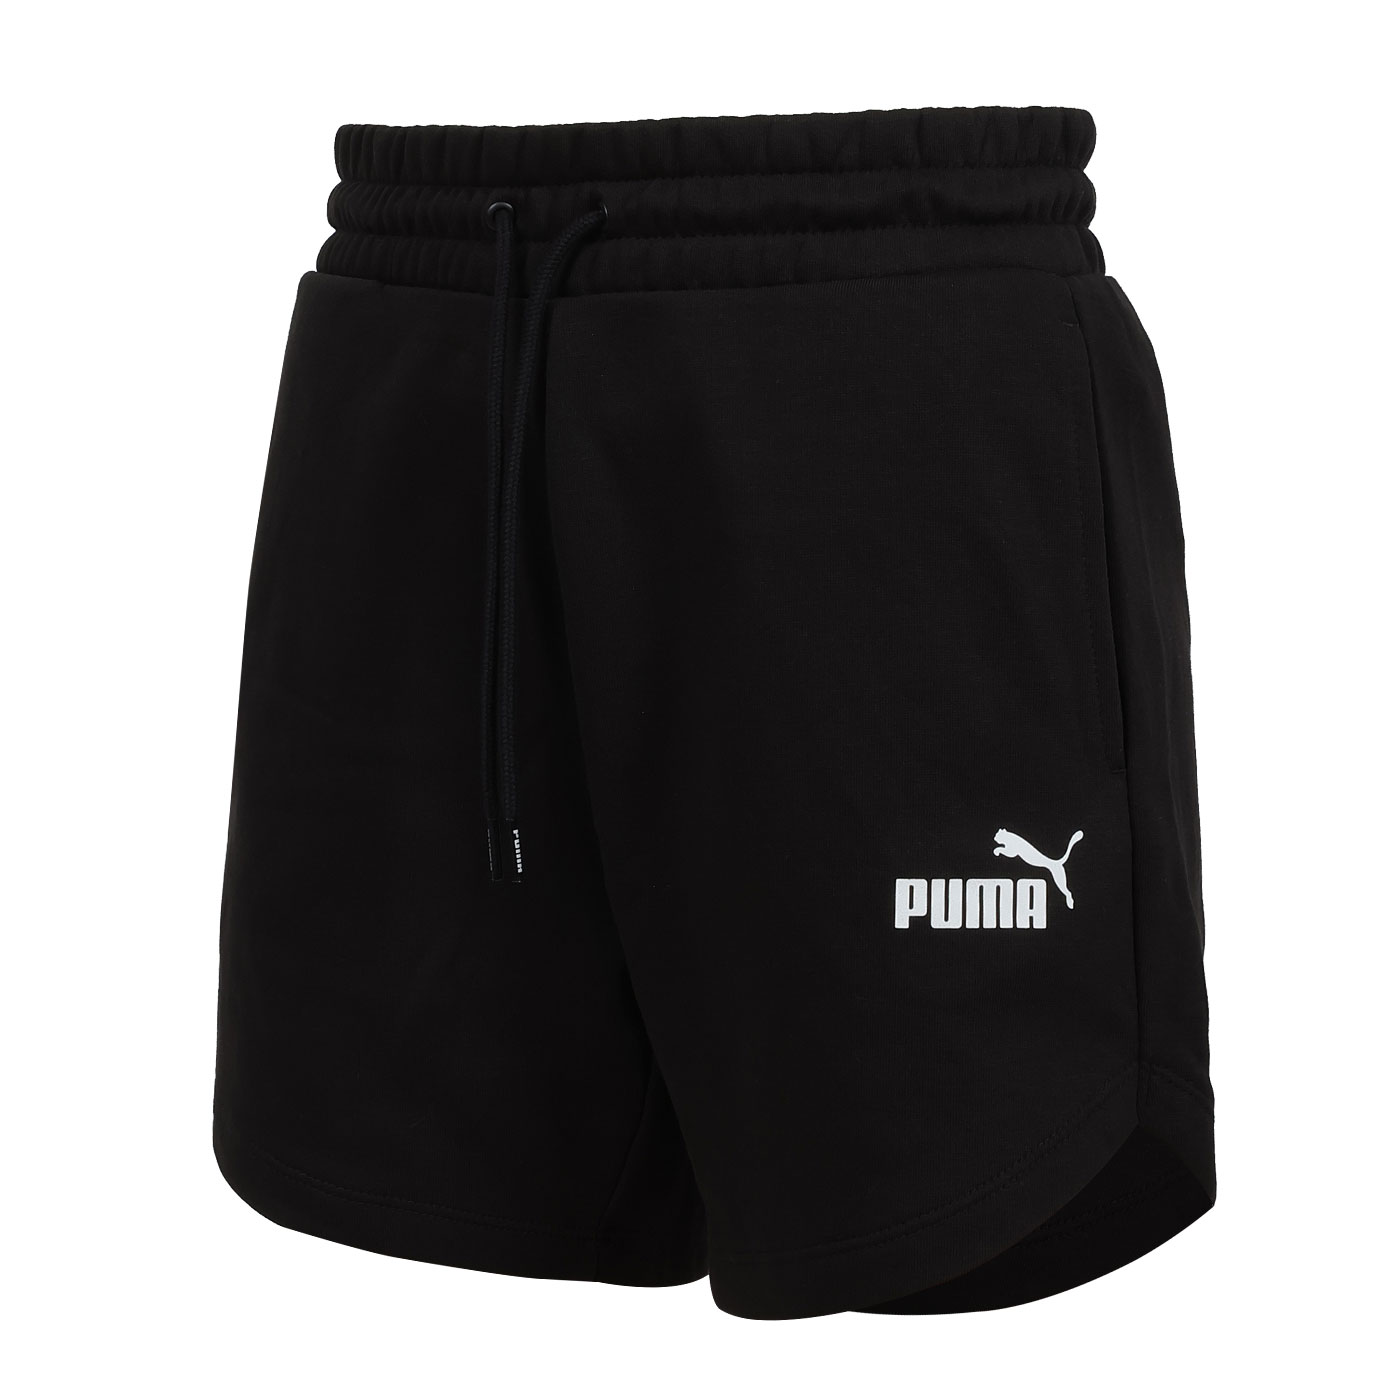 PUMA 女款基本系列ESS 5吋高腰短褲  84833901 - 黑白